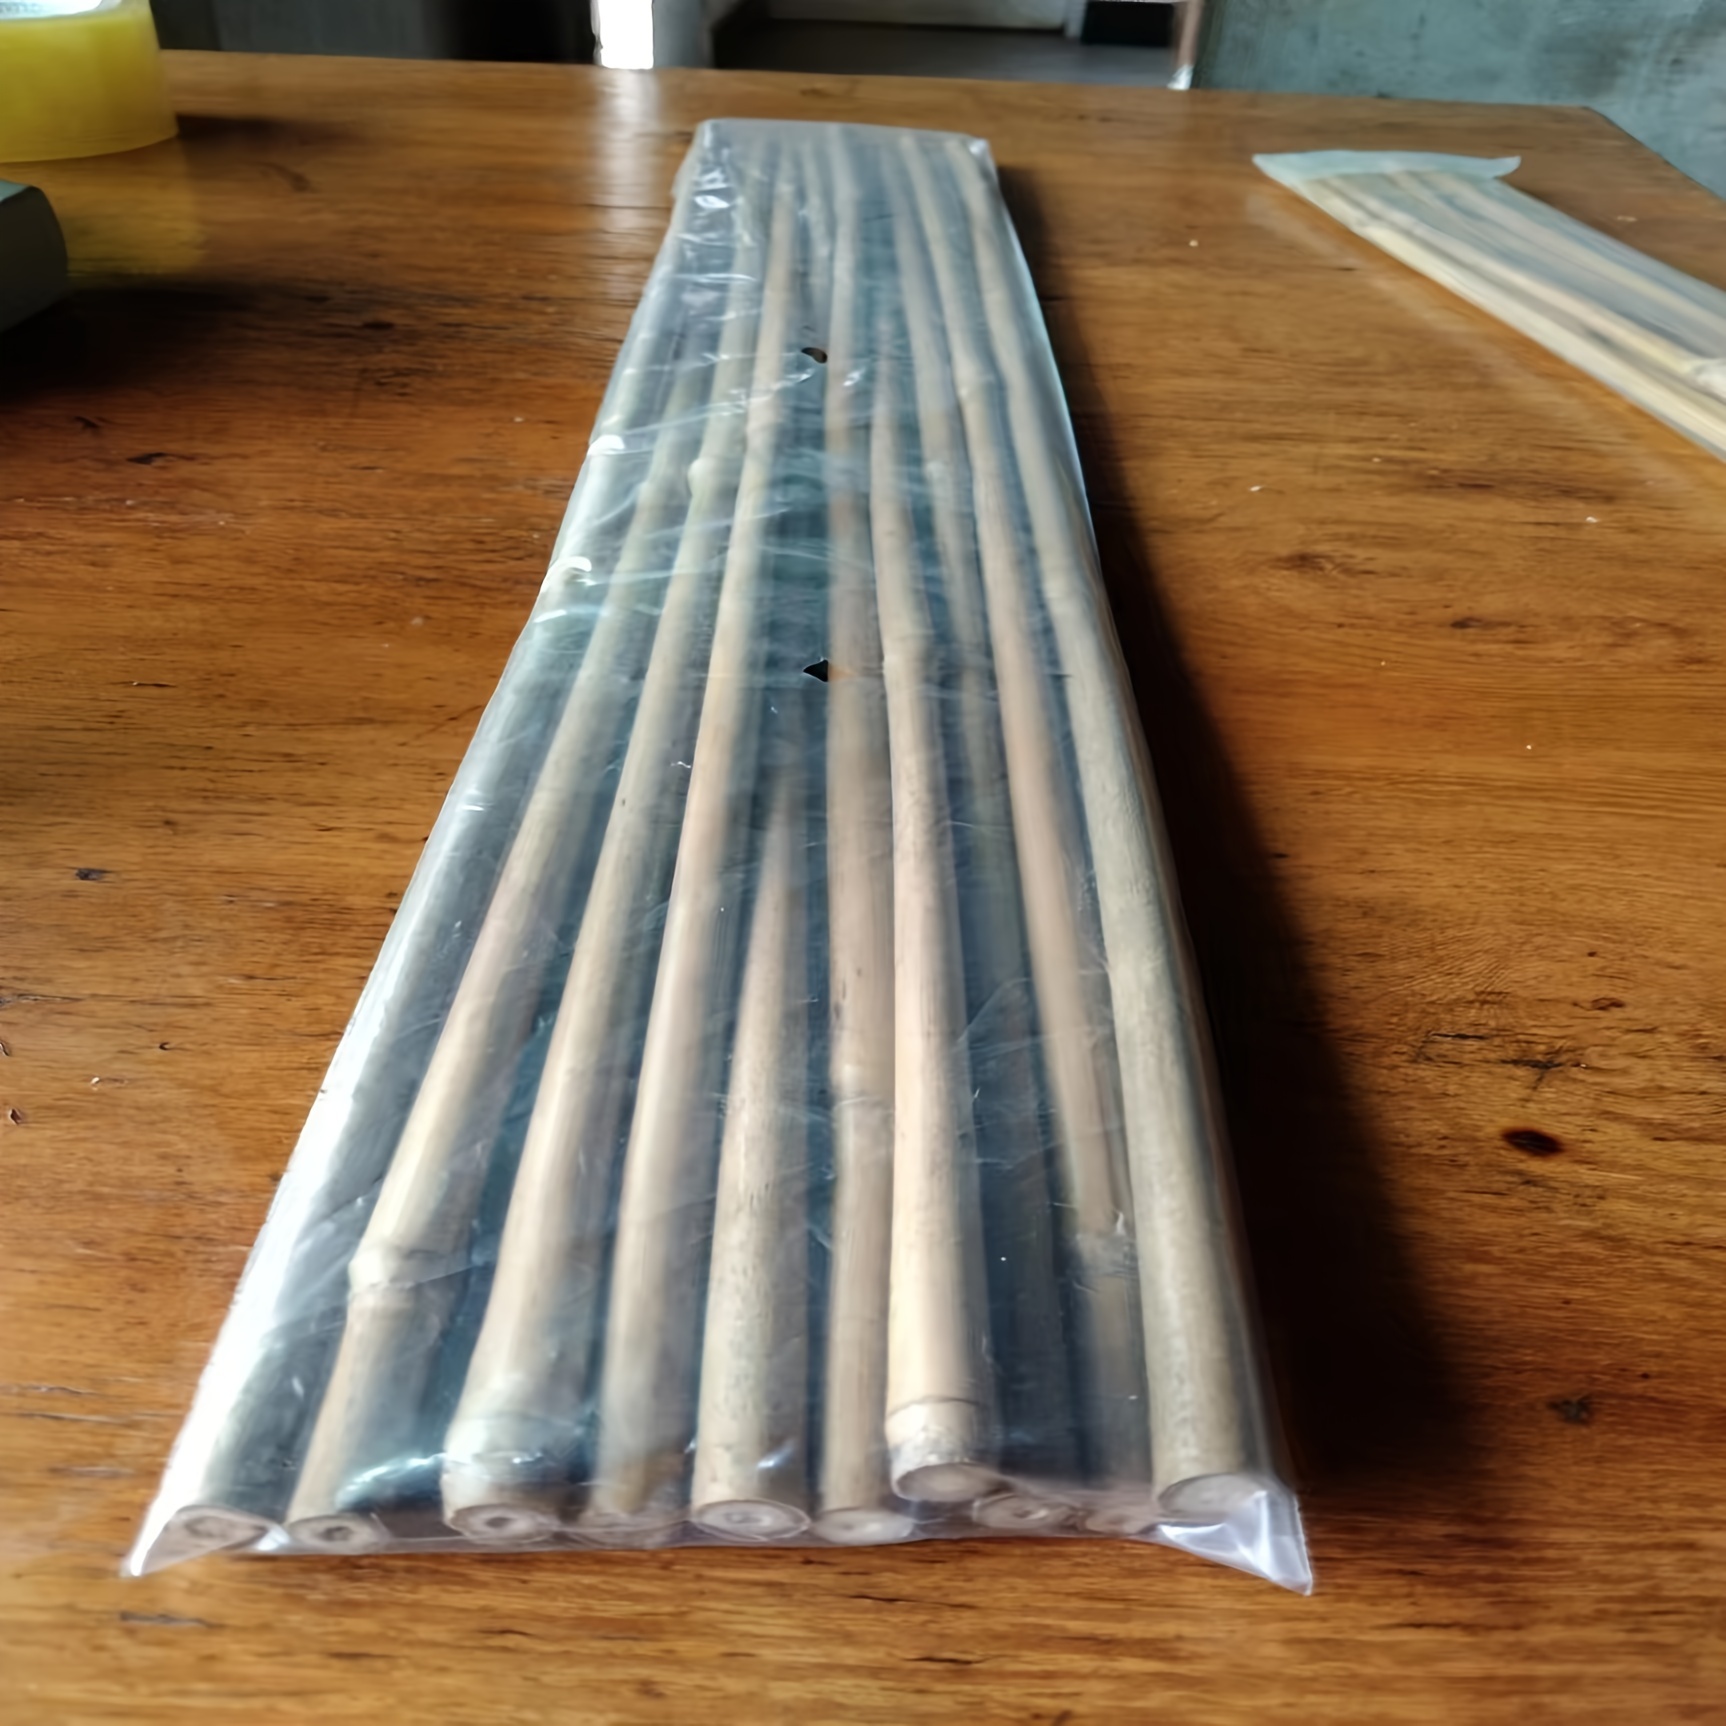 Artificial Bamboo Poles, Synthetic Bamboo Sticks